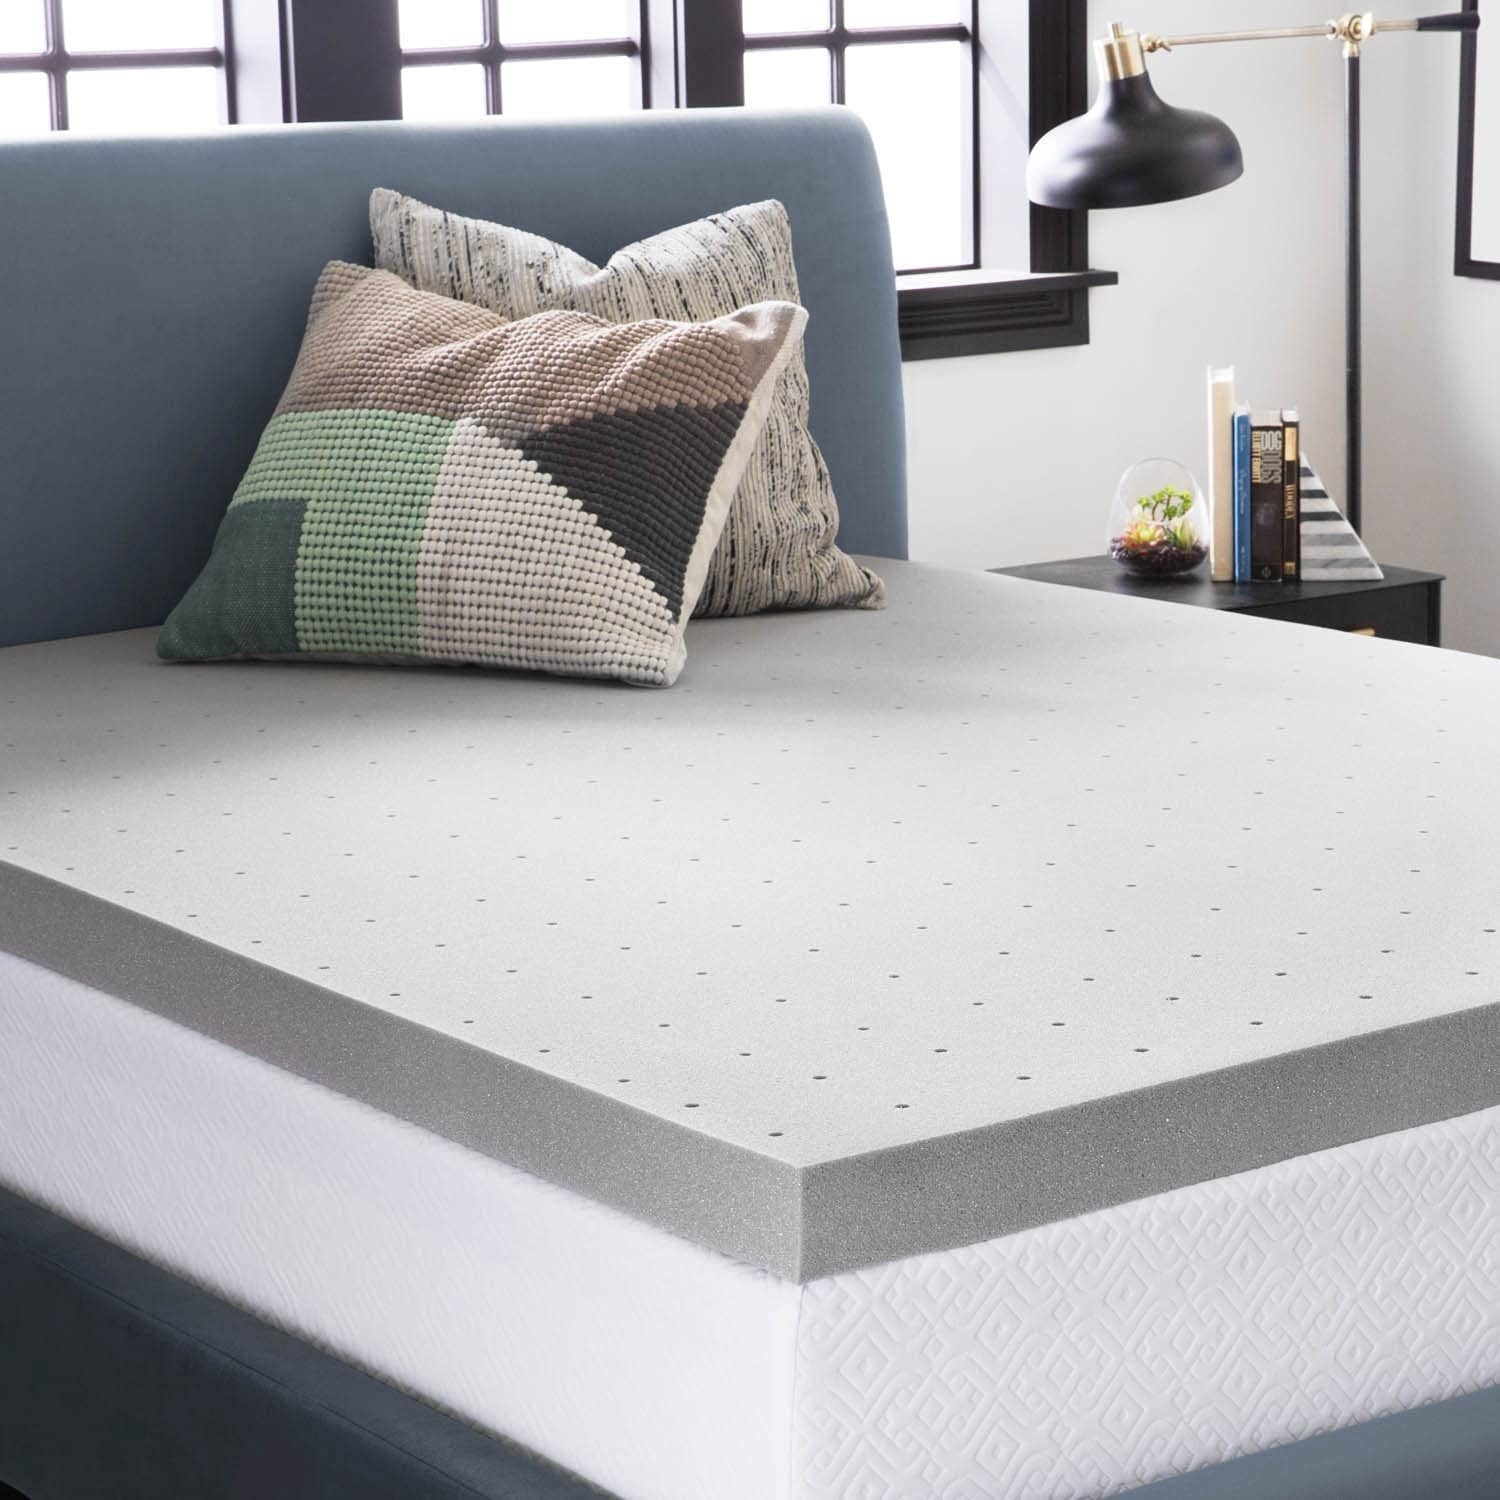 a memory foam mattress topper on a mattress